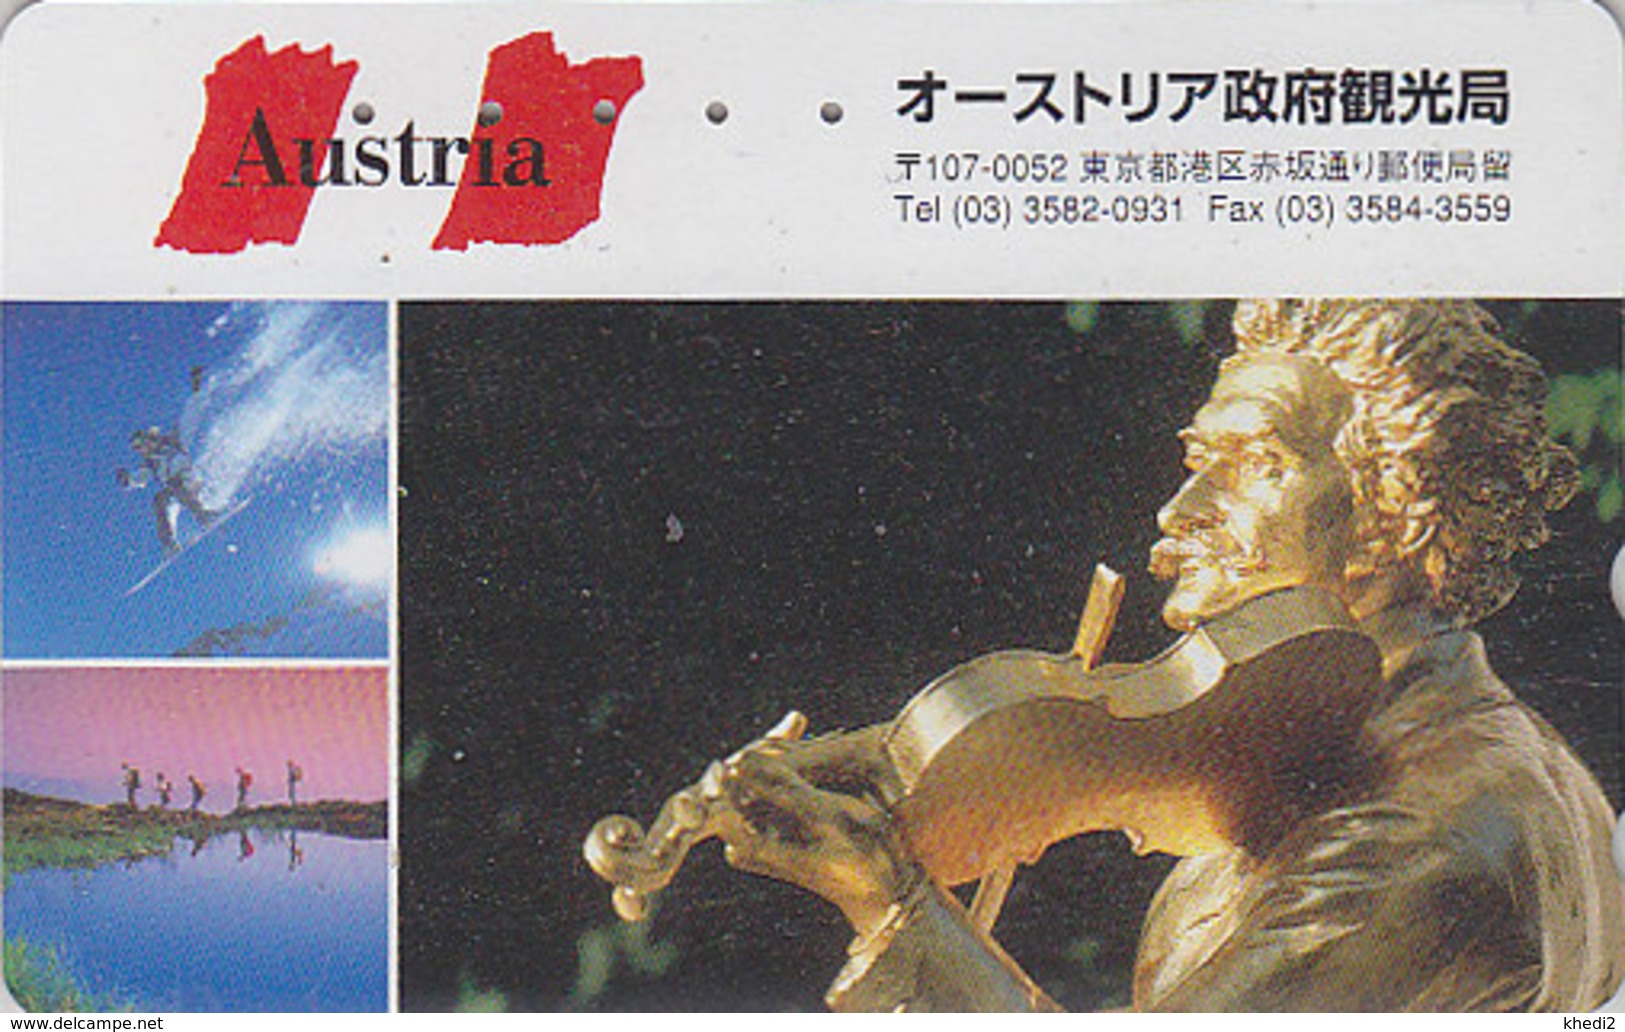 Télécarte Japon / 110-016 - Série 1000 ANS AUTRICHE - Musique STRAUSS & Violon - Japan Phonecard - AUSTRIA Rel TK - 10 - Music